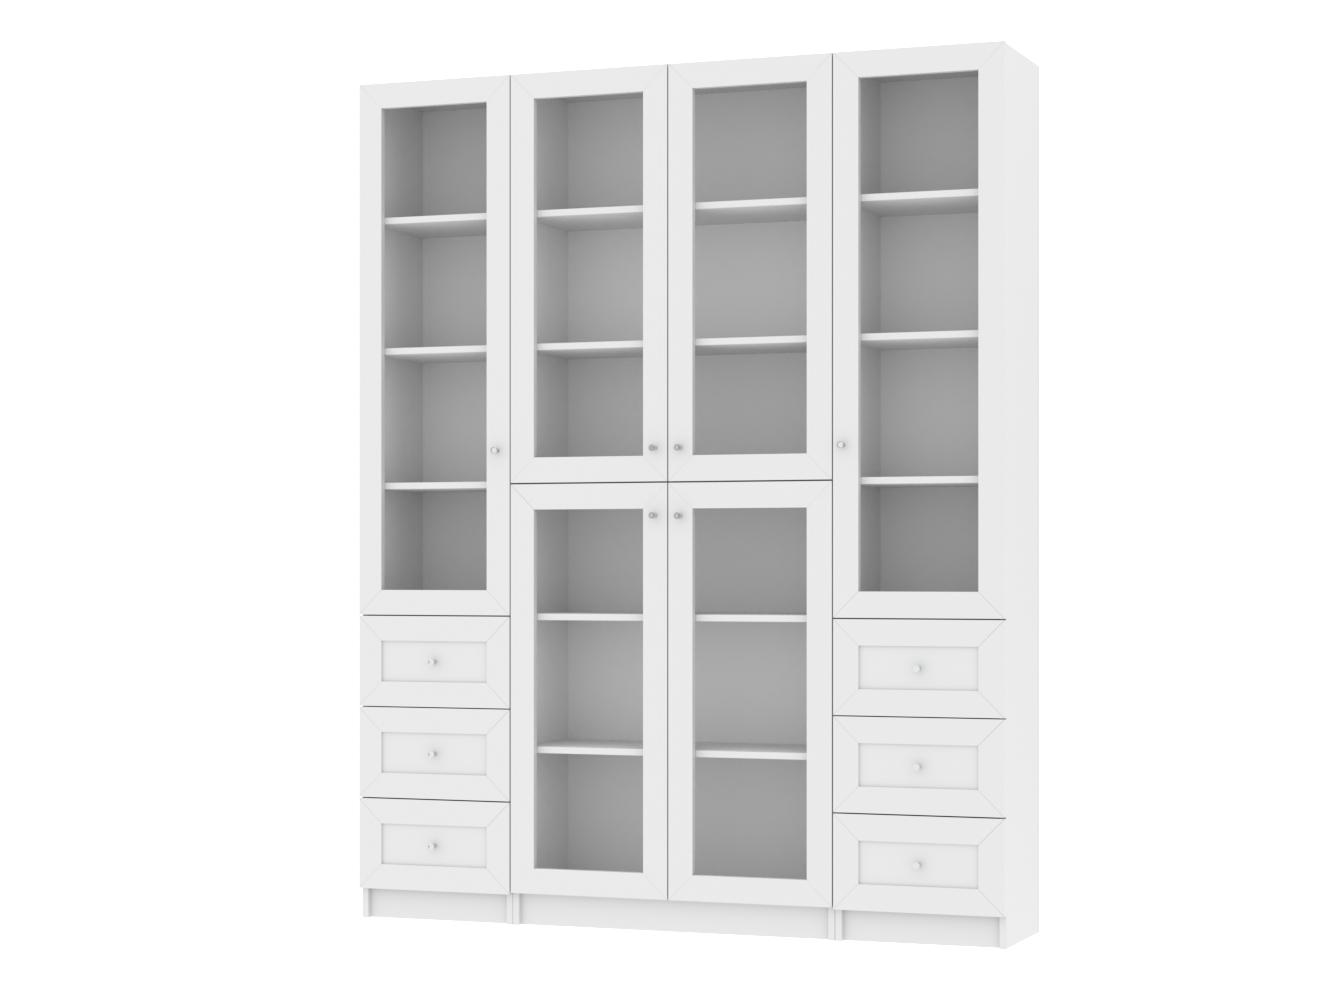 Изображение товара Книжный шкаф Билли 46 white ИКЕА (IKEA), 160x30x202 см на сайте adeta.ru